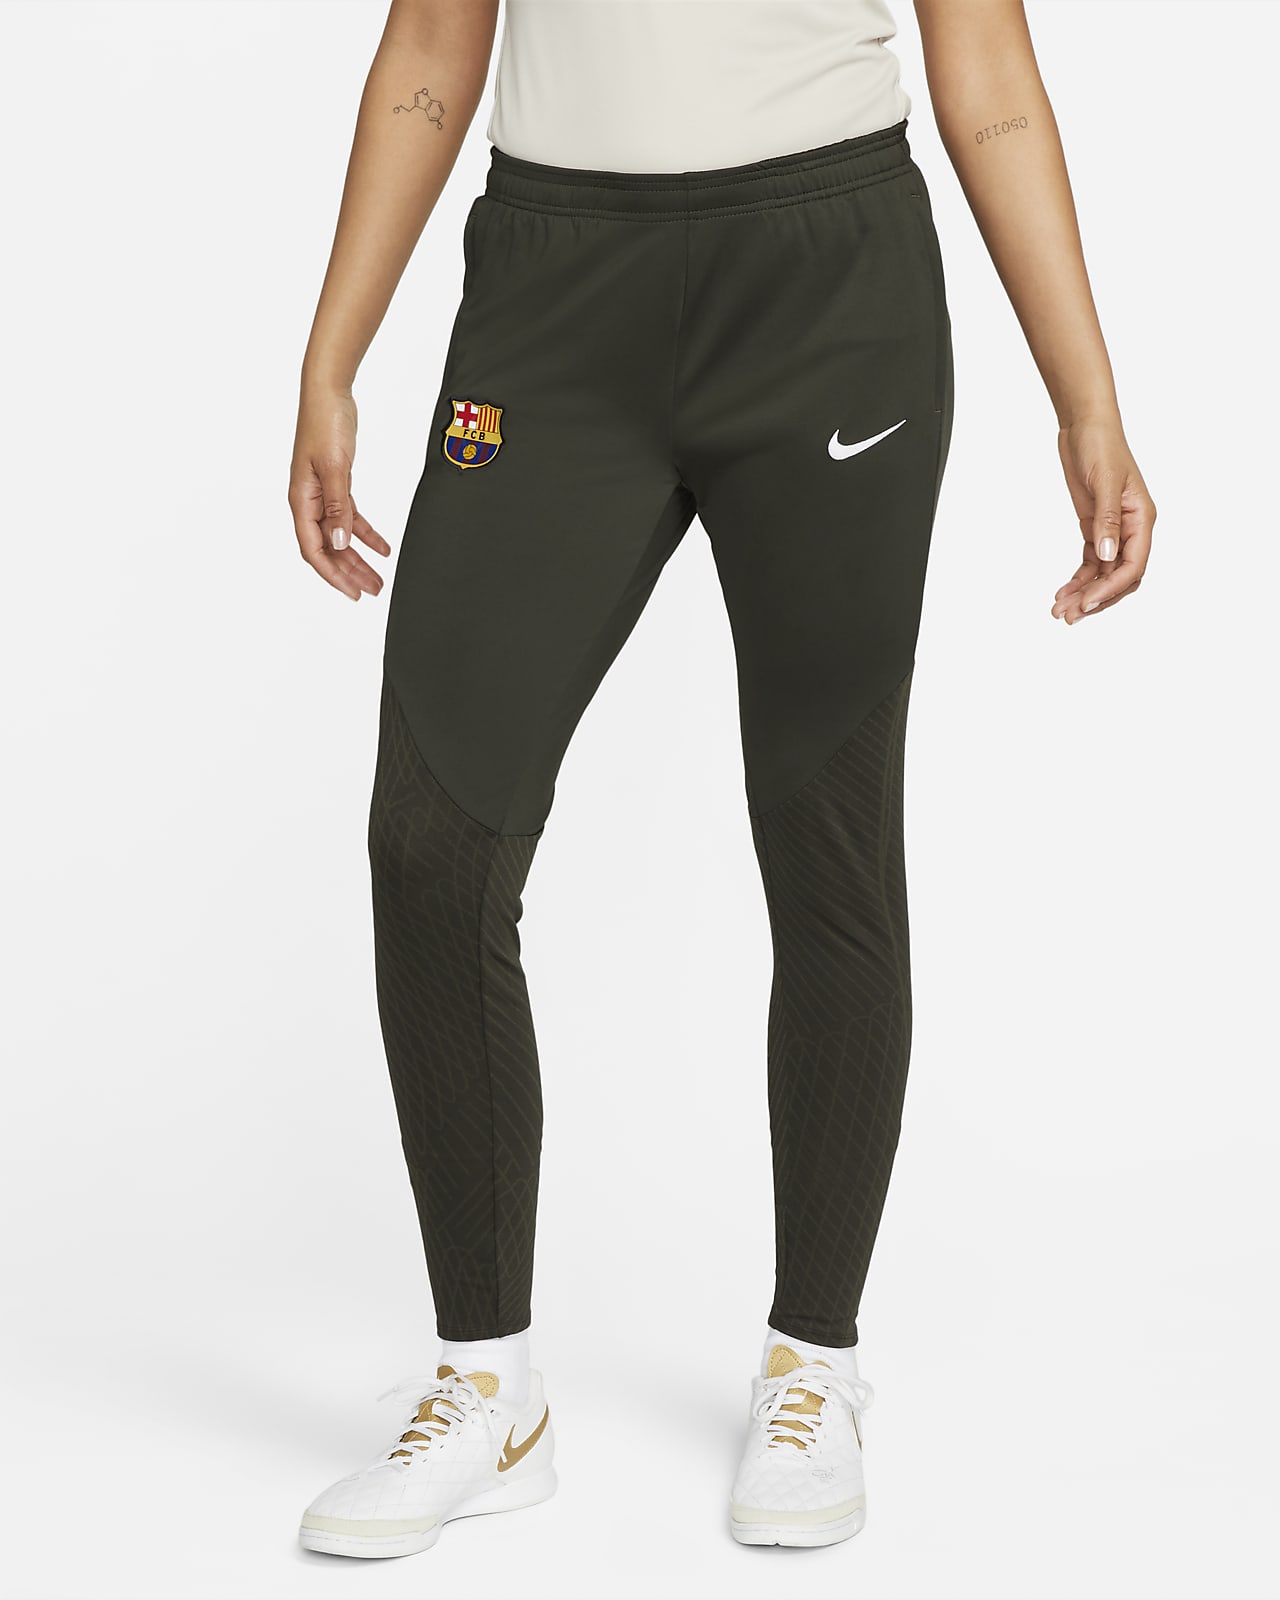 Γυναικείο πλεκτό ποδοσφαιρικό παντελόνι Nike Dri-FIT Μπαρτσελόνα Strike